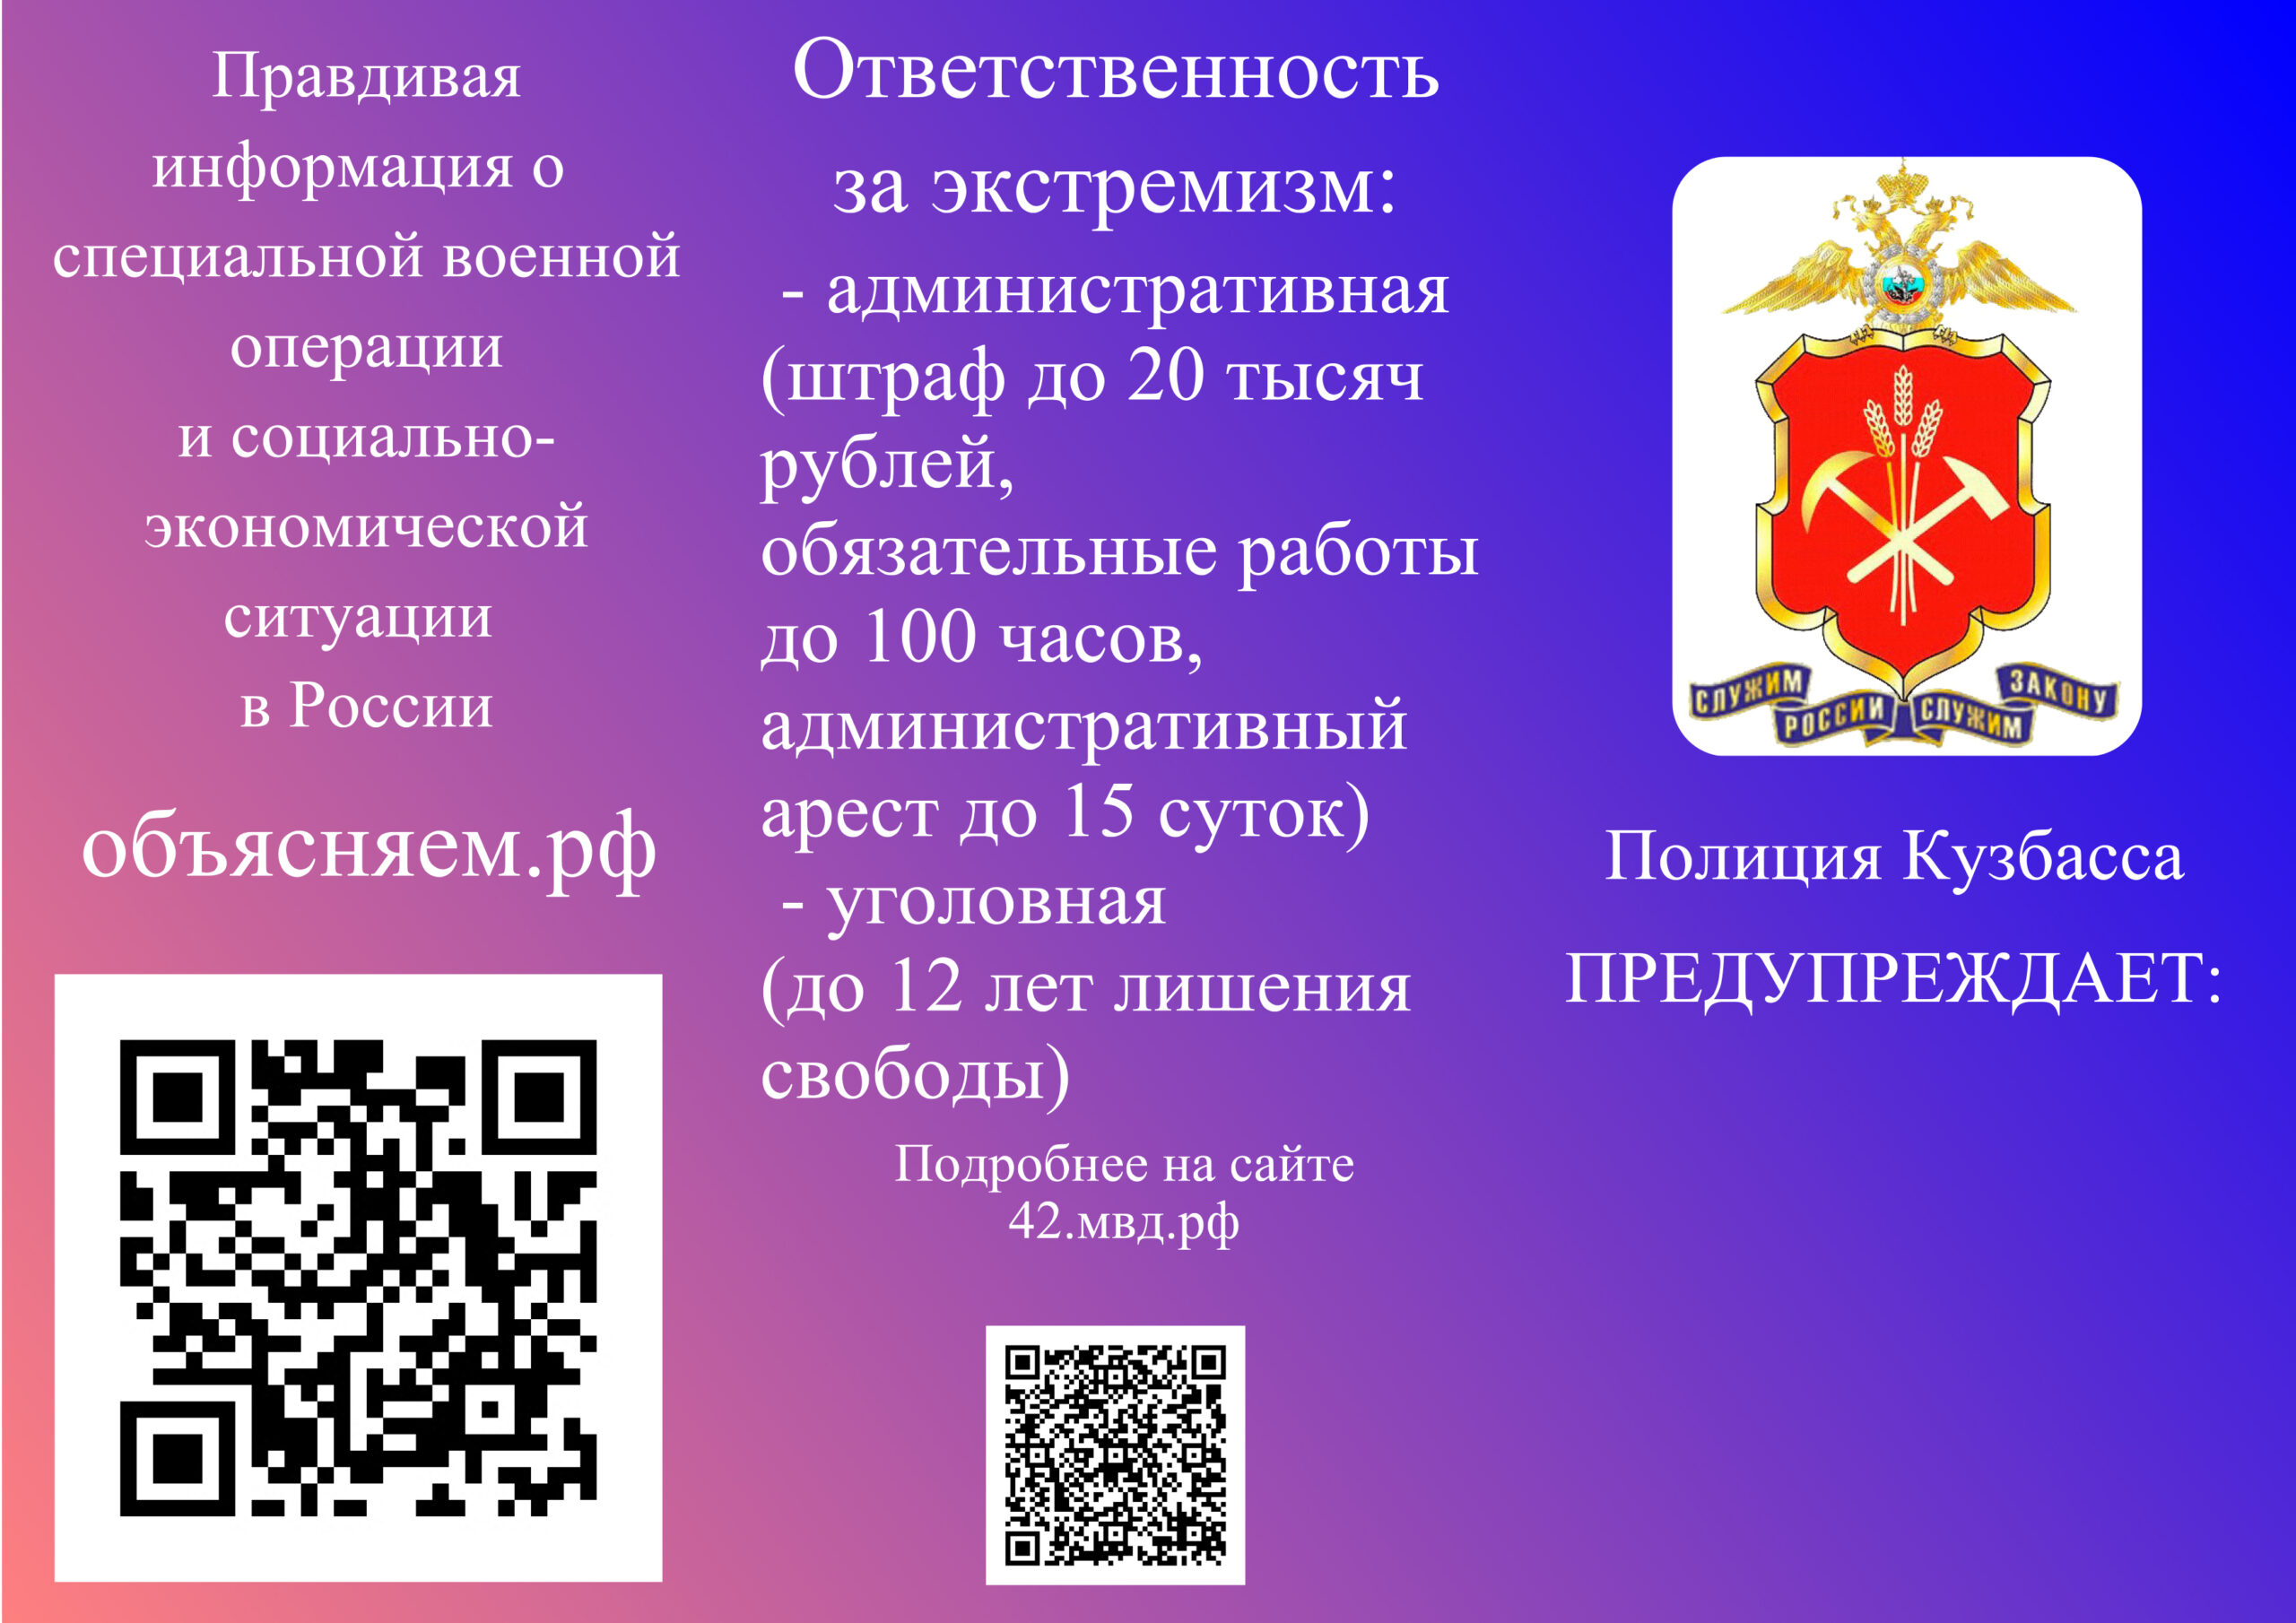 Профилактический буклет «Полиция Кузбасса предупреждает» 2